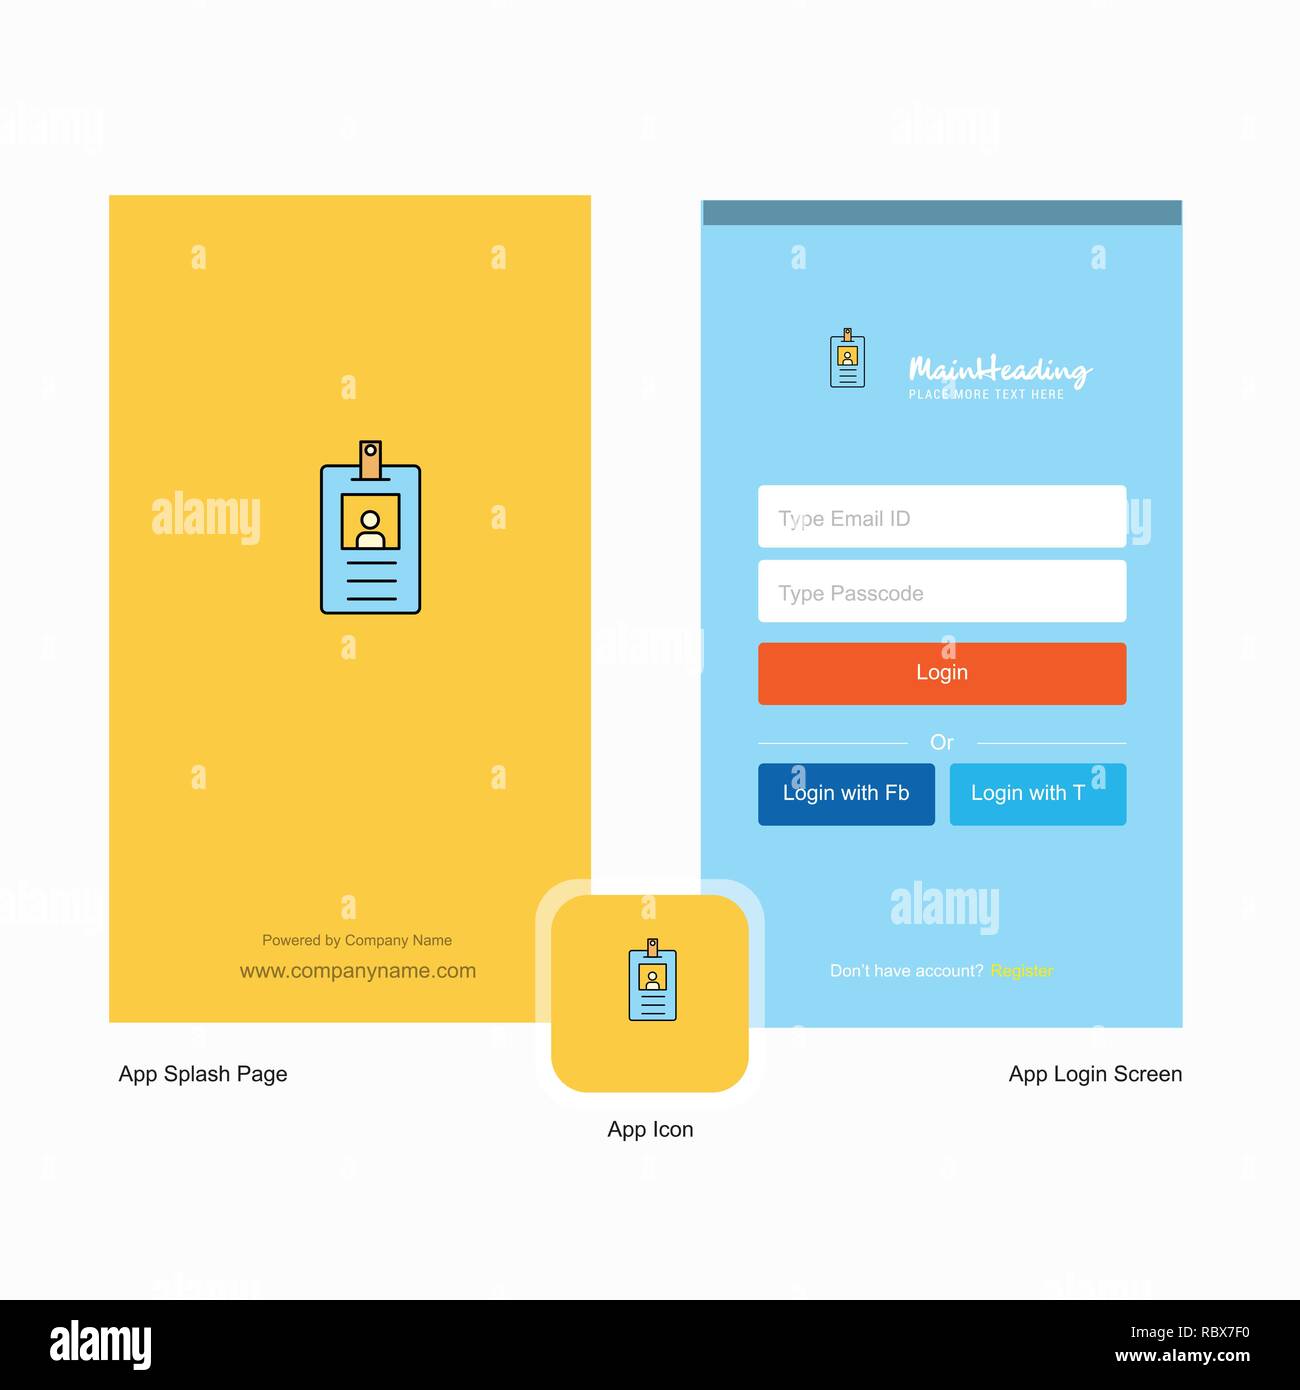 Firmenausweis Startbildschirm Und Login Seite Design Mit Logo Vorlage Mobile Online Business Template Stock Vektorgrafik Alamy